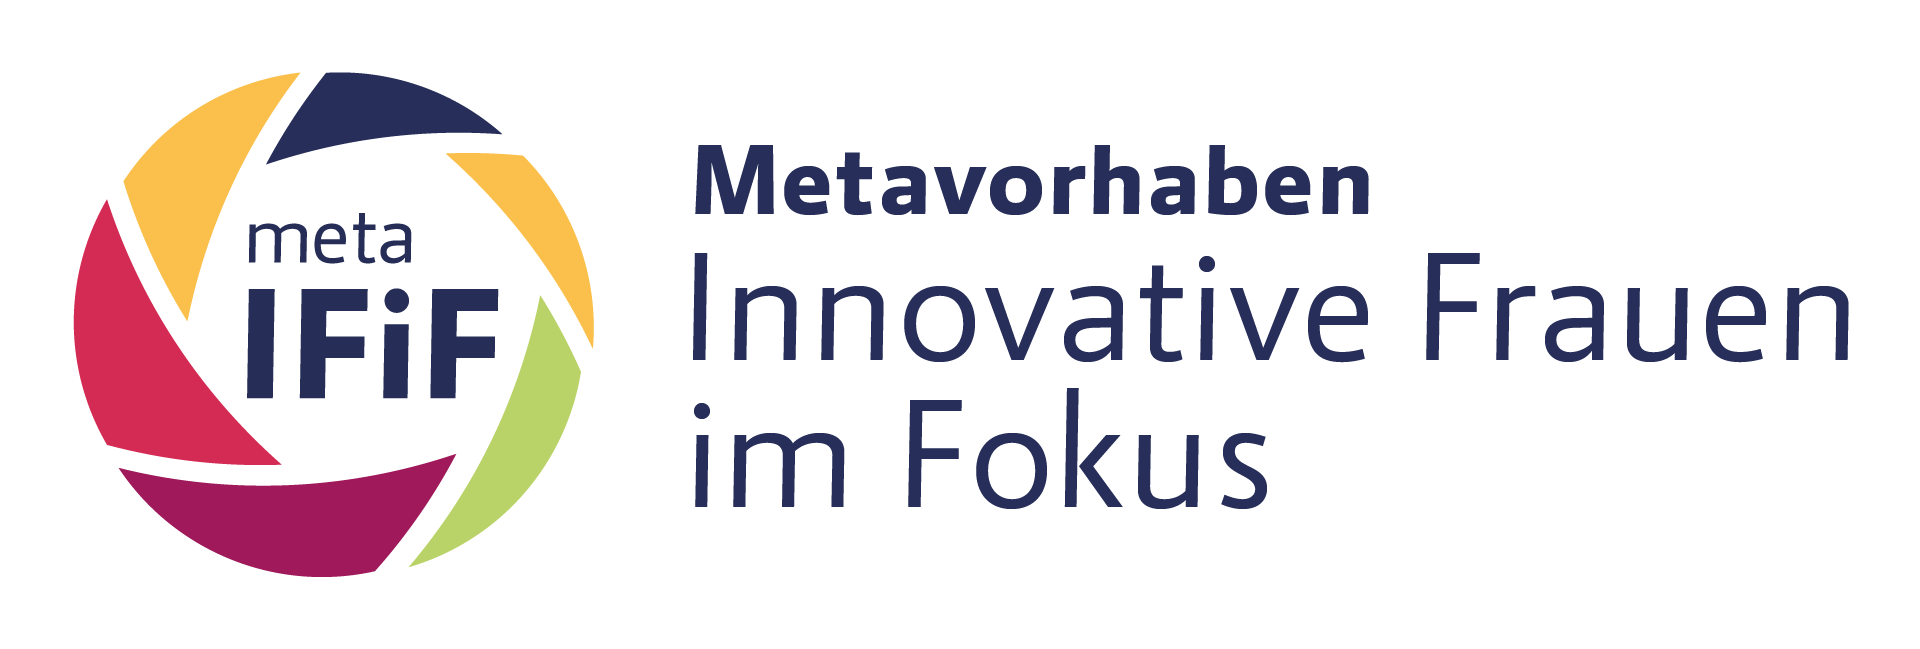 Logo vom Metavorhaben Innovative Frauen im Fokus